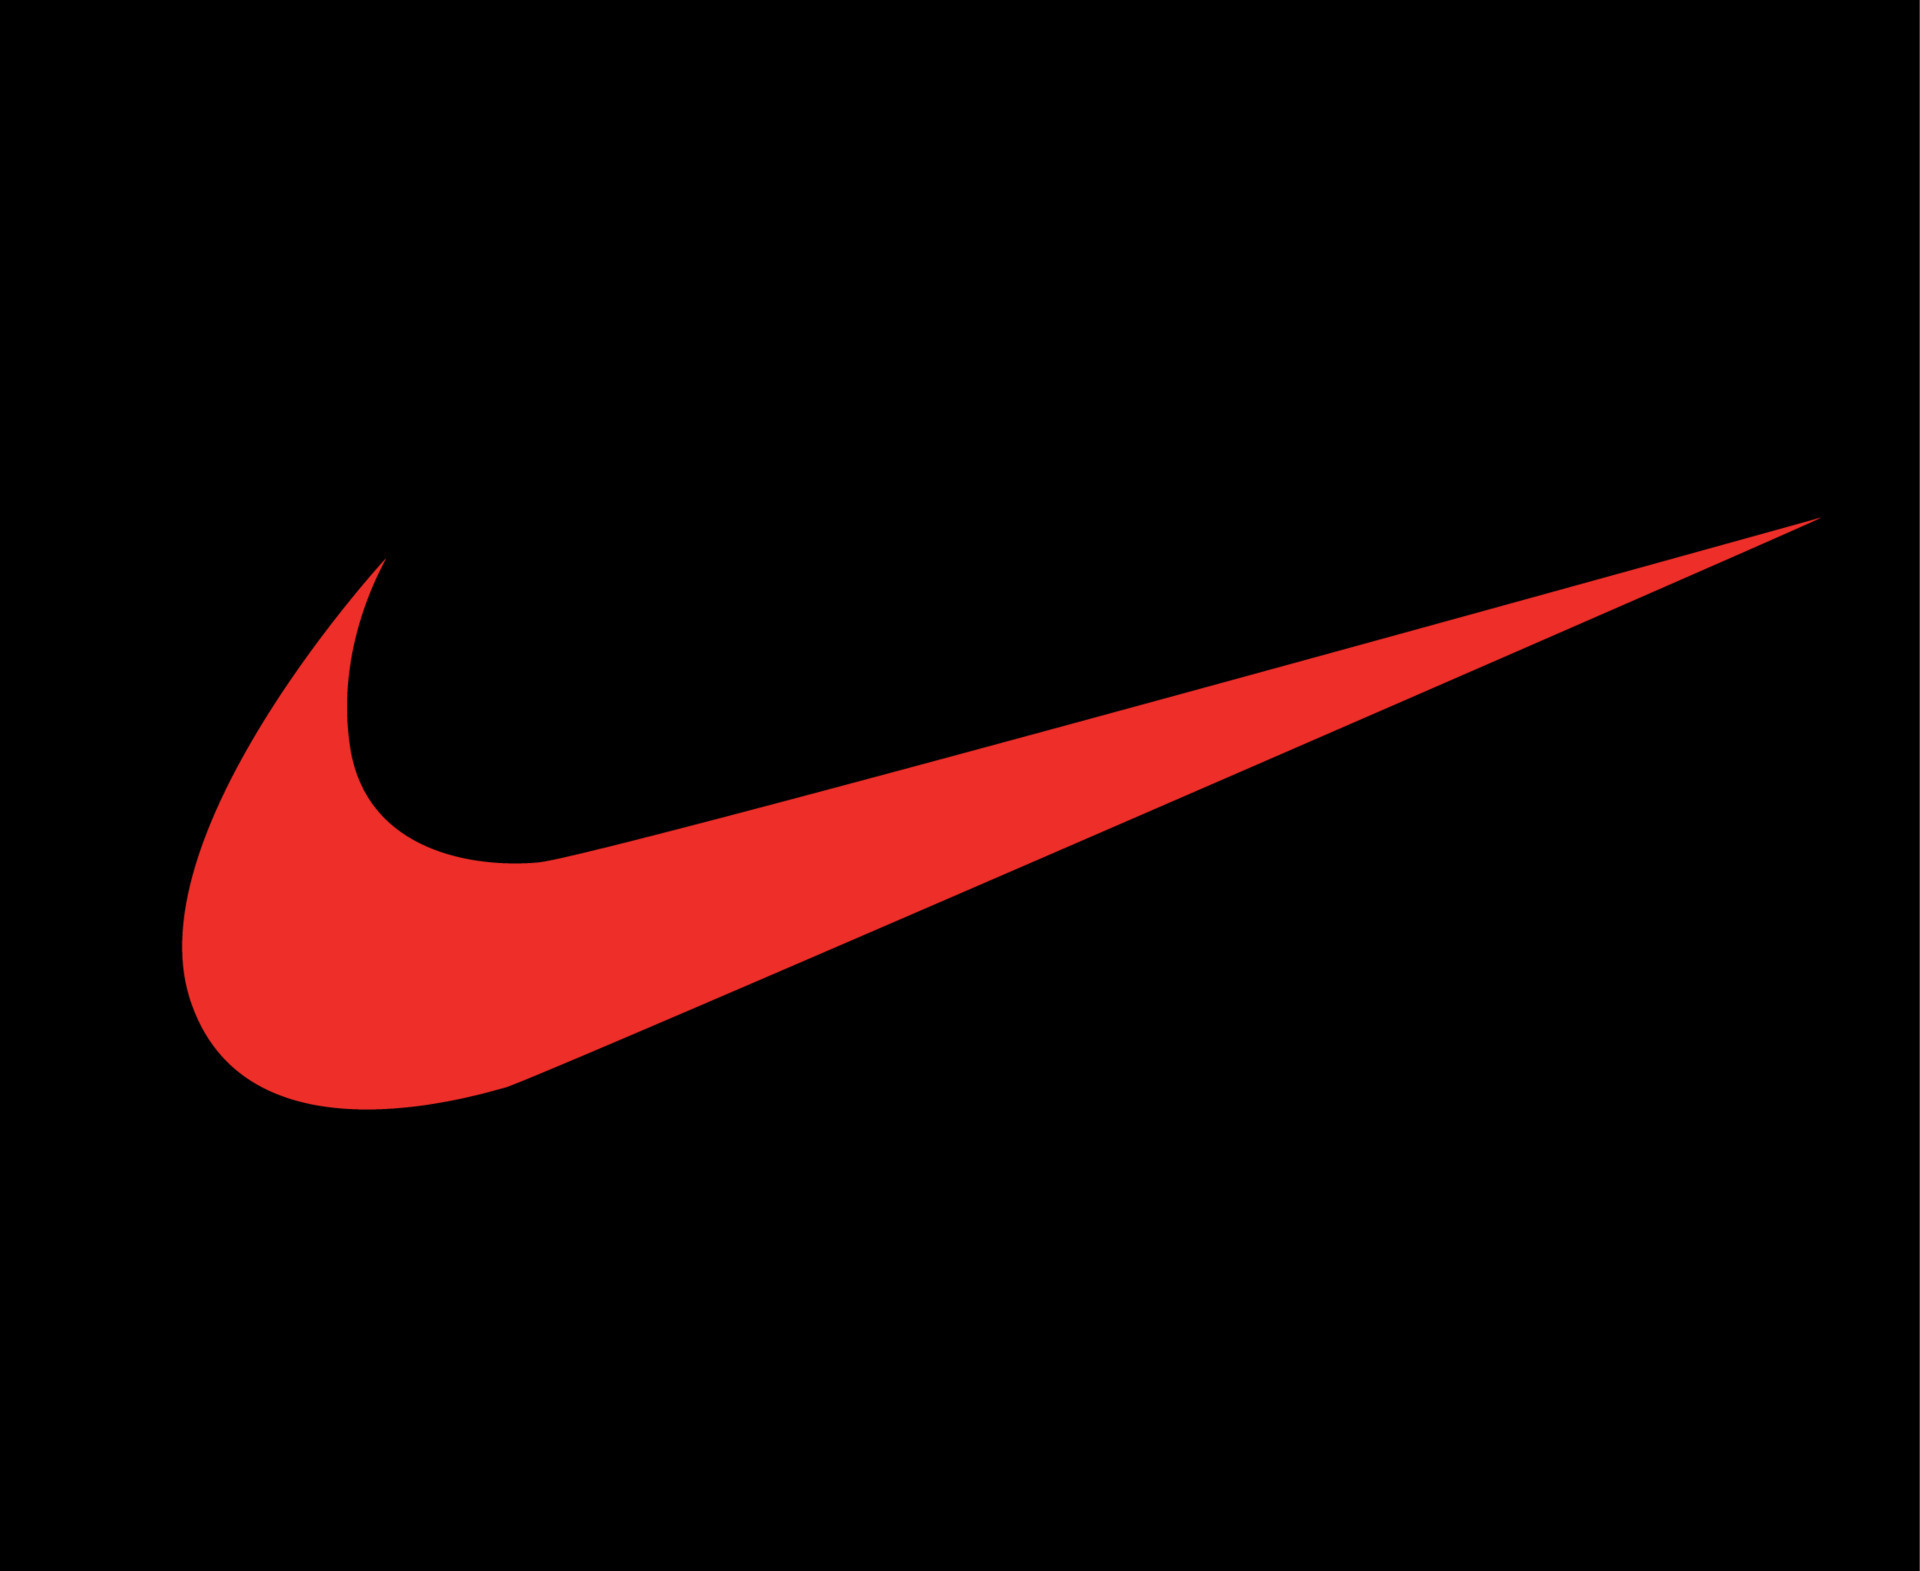 Thời trang Nike thật là đẹp và thú vị! Nếu bạn thích mặc quần áo thể thao và đang tìm kiếm một thương hiệu uy tín, hãy khám phá bộ sưu tập Nike của chúng tôi và choáng ngợp với sự đa dạng cũng như chất lượng của sản phẩm.